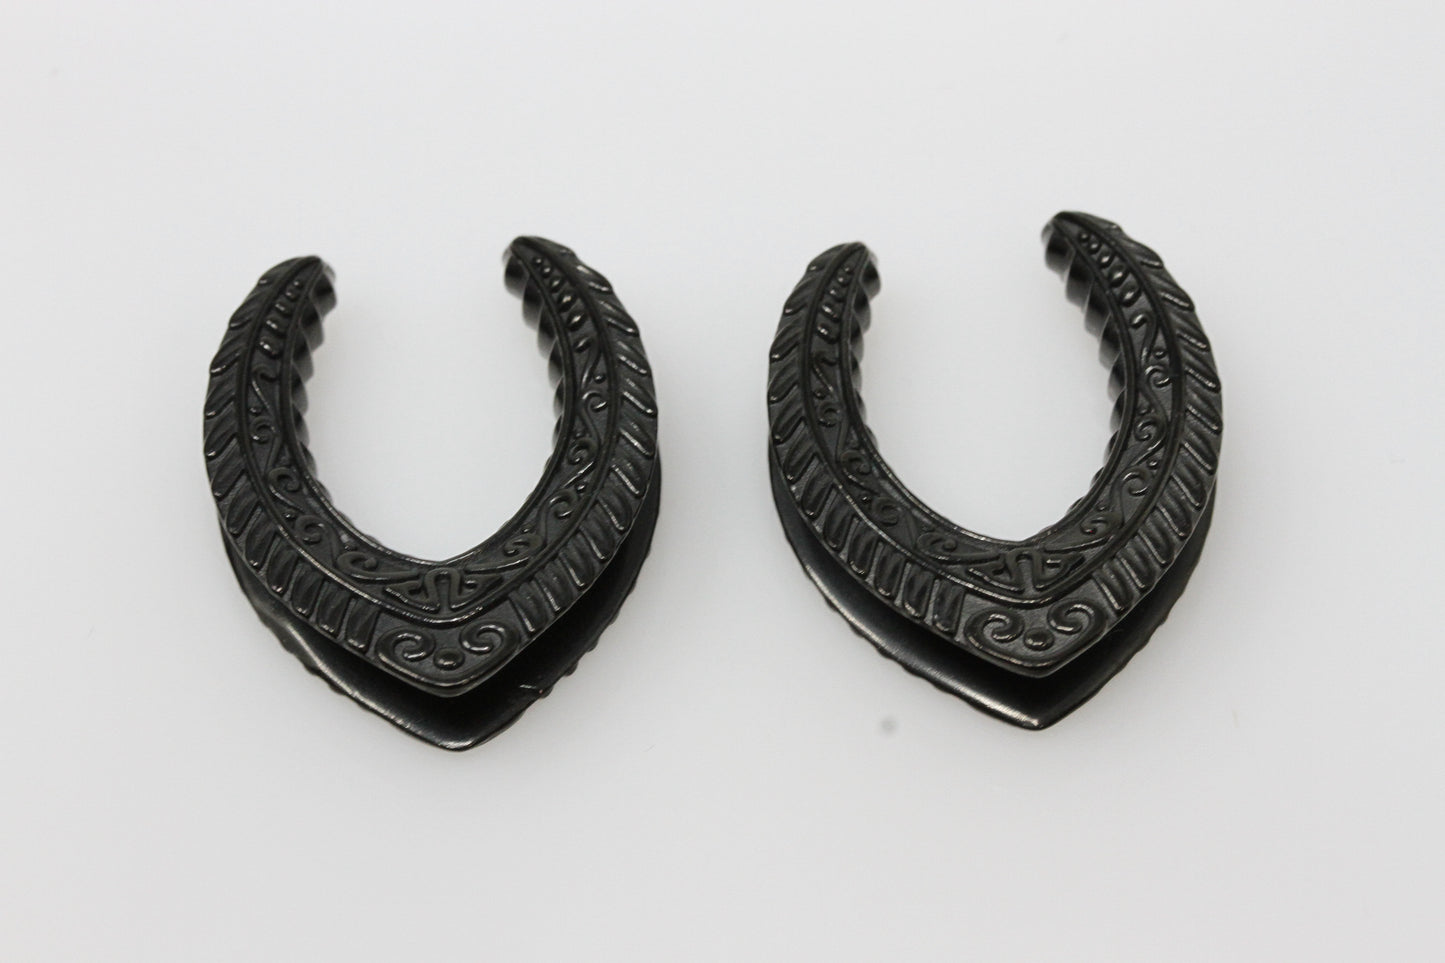 Black stainless steel stargate saddle plugs